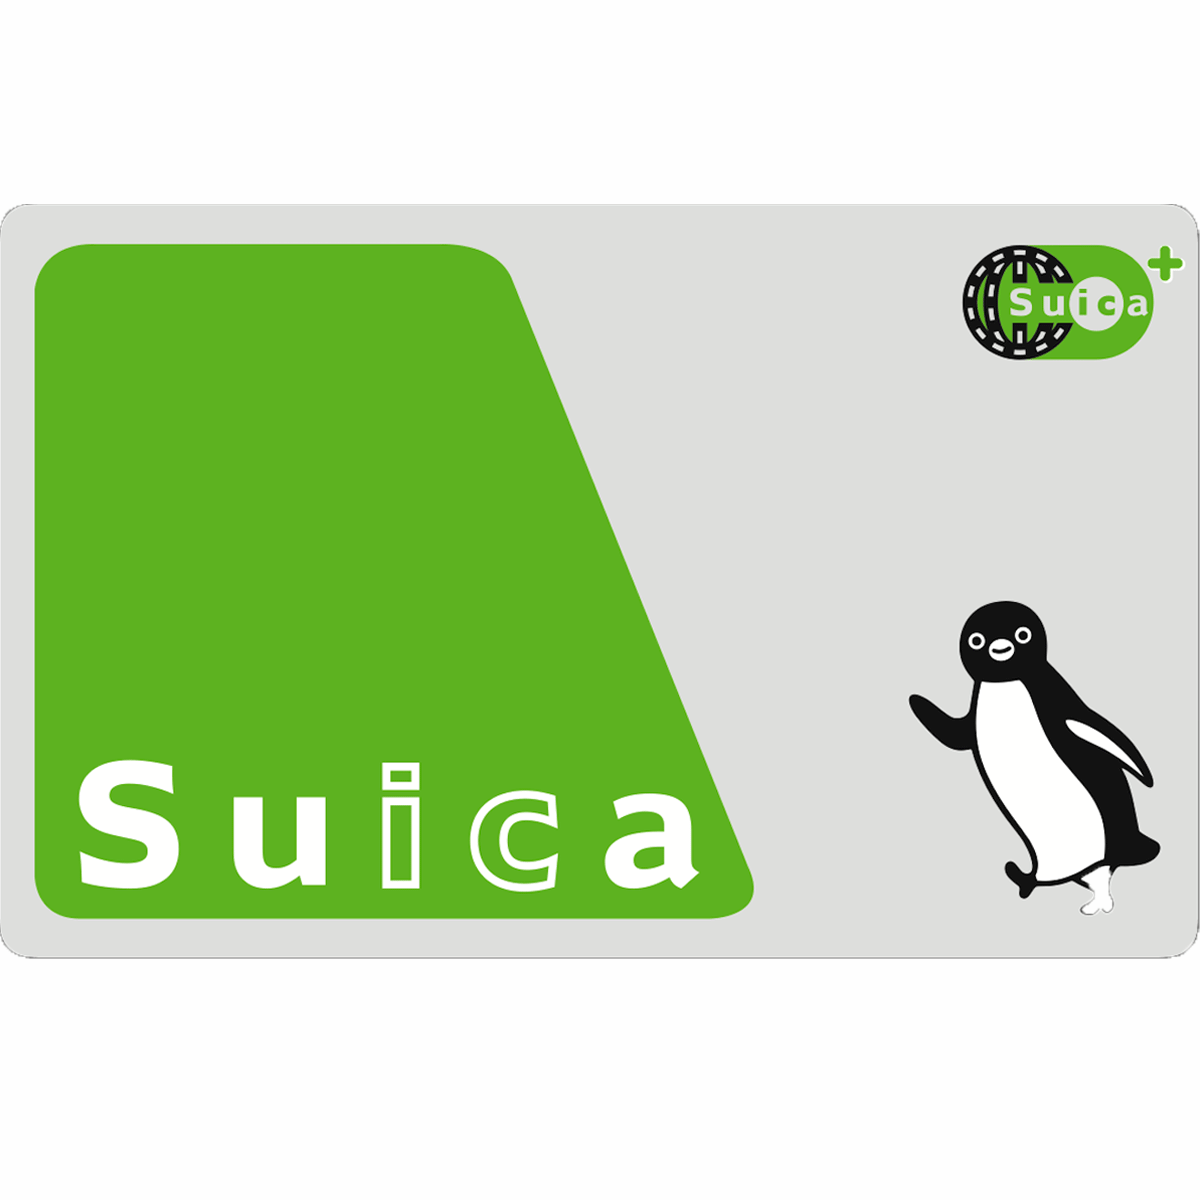 Suica スイカ の種類と内容 カードの研究